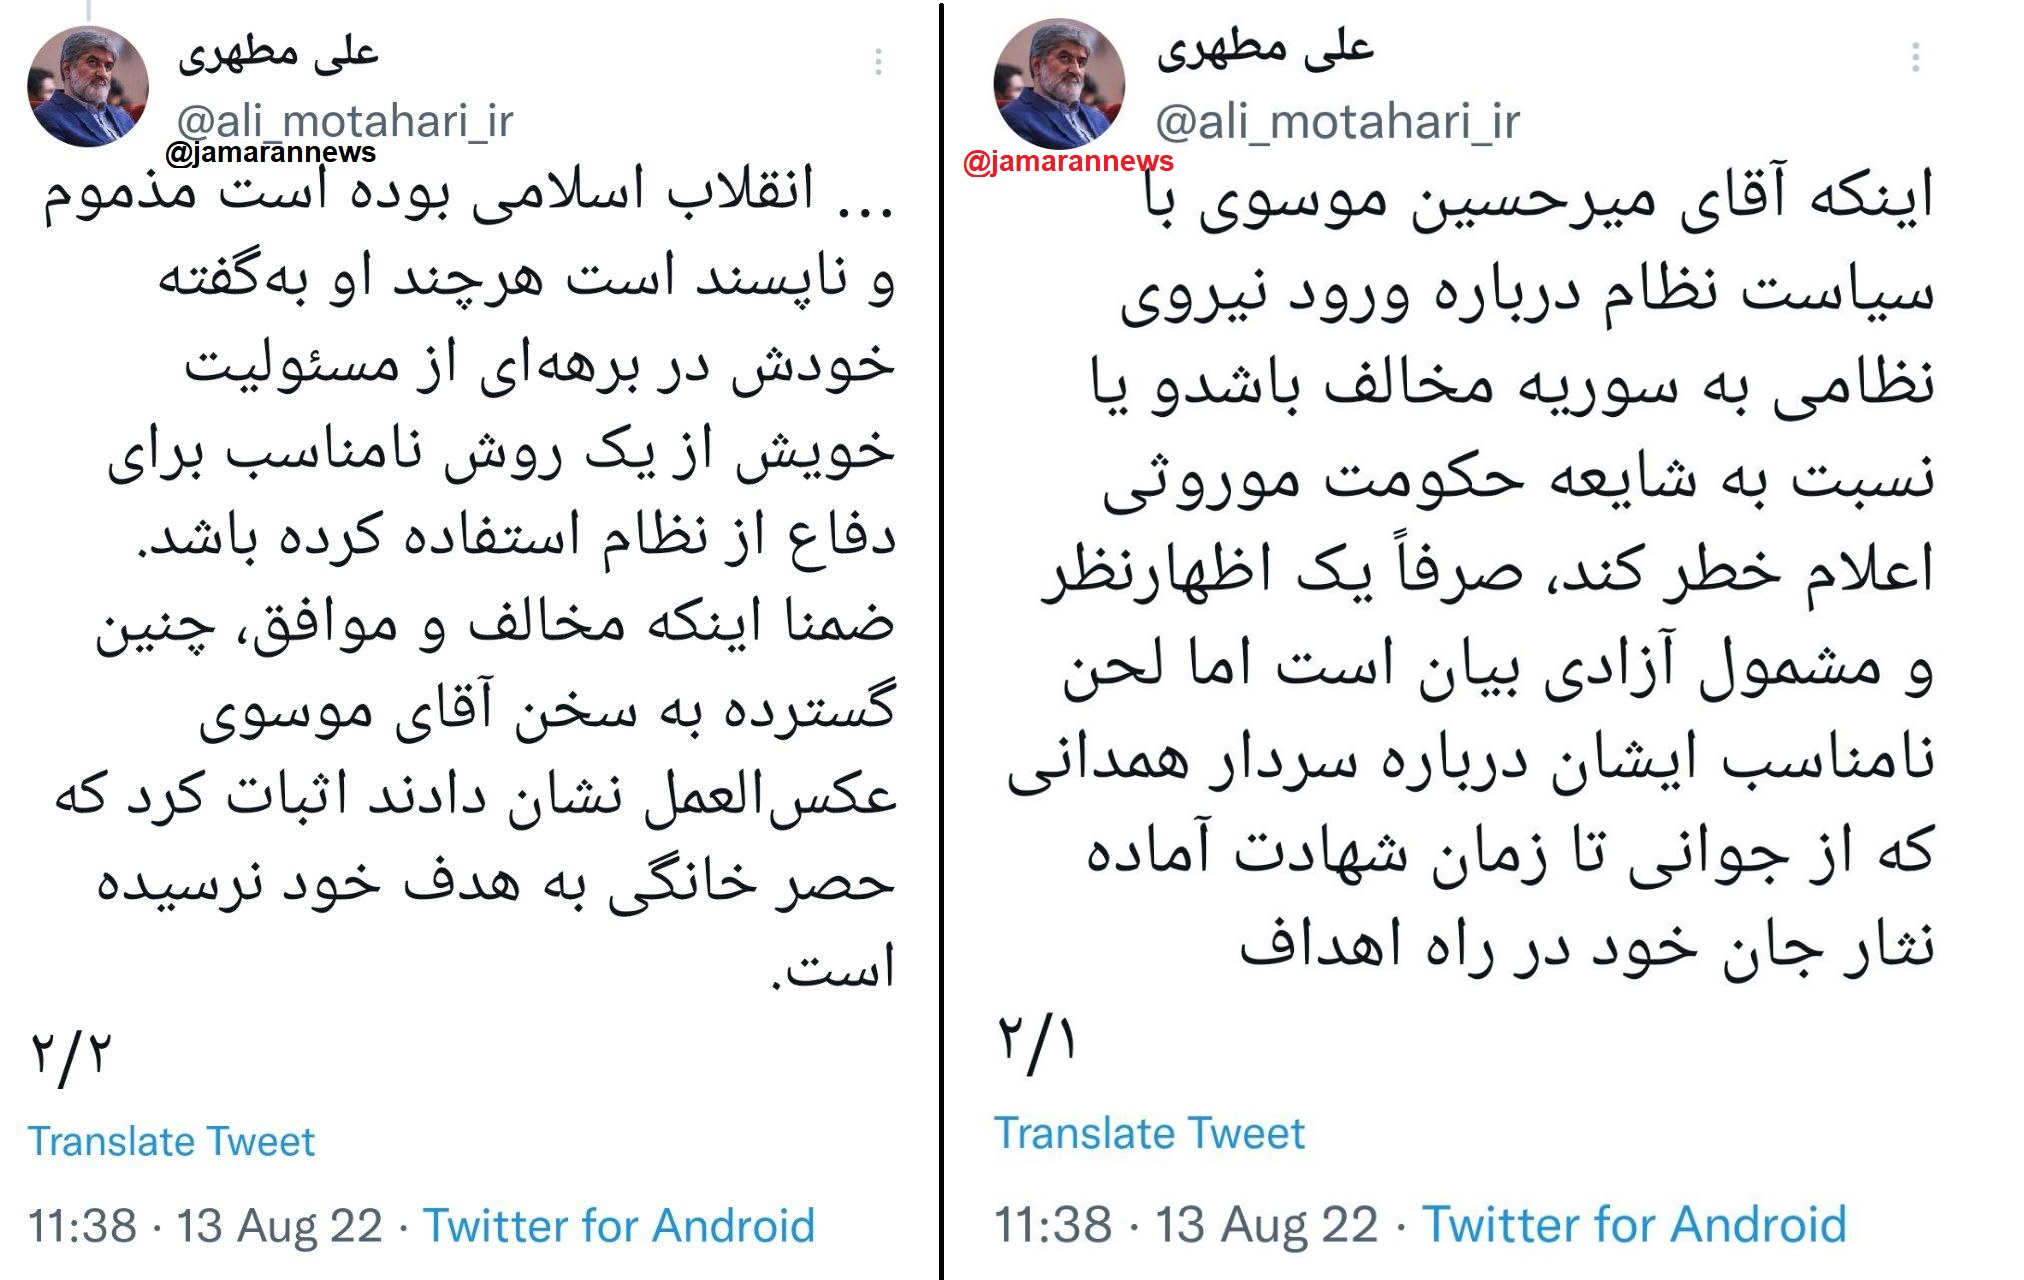 اعلام نظر علی مطهری در مورد بیانیه میرحسین موسوی